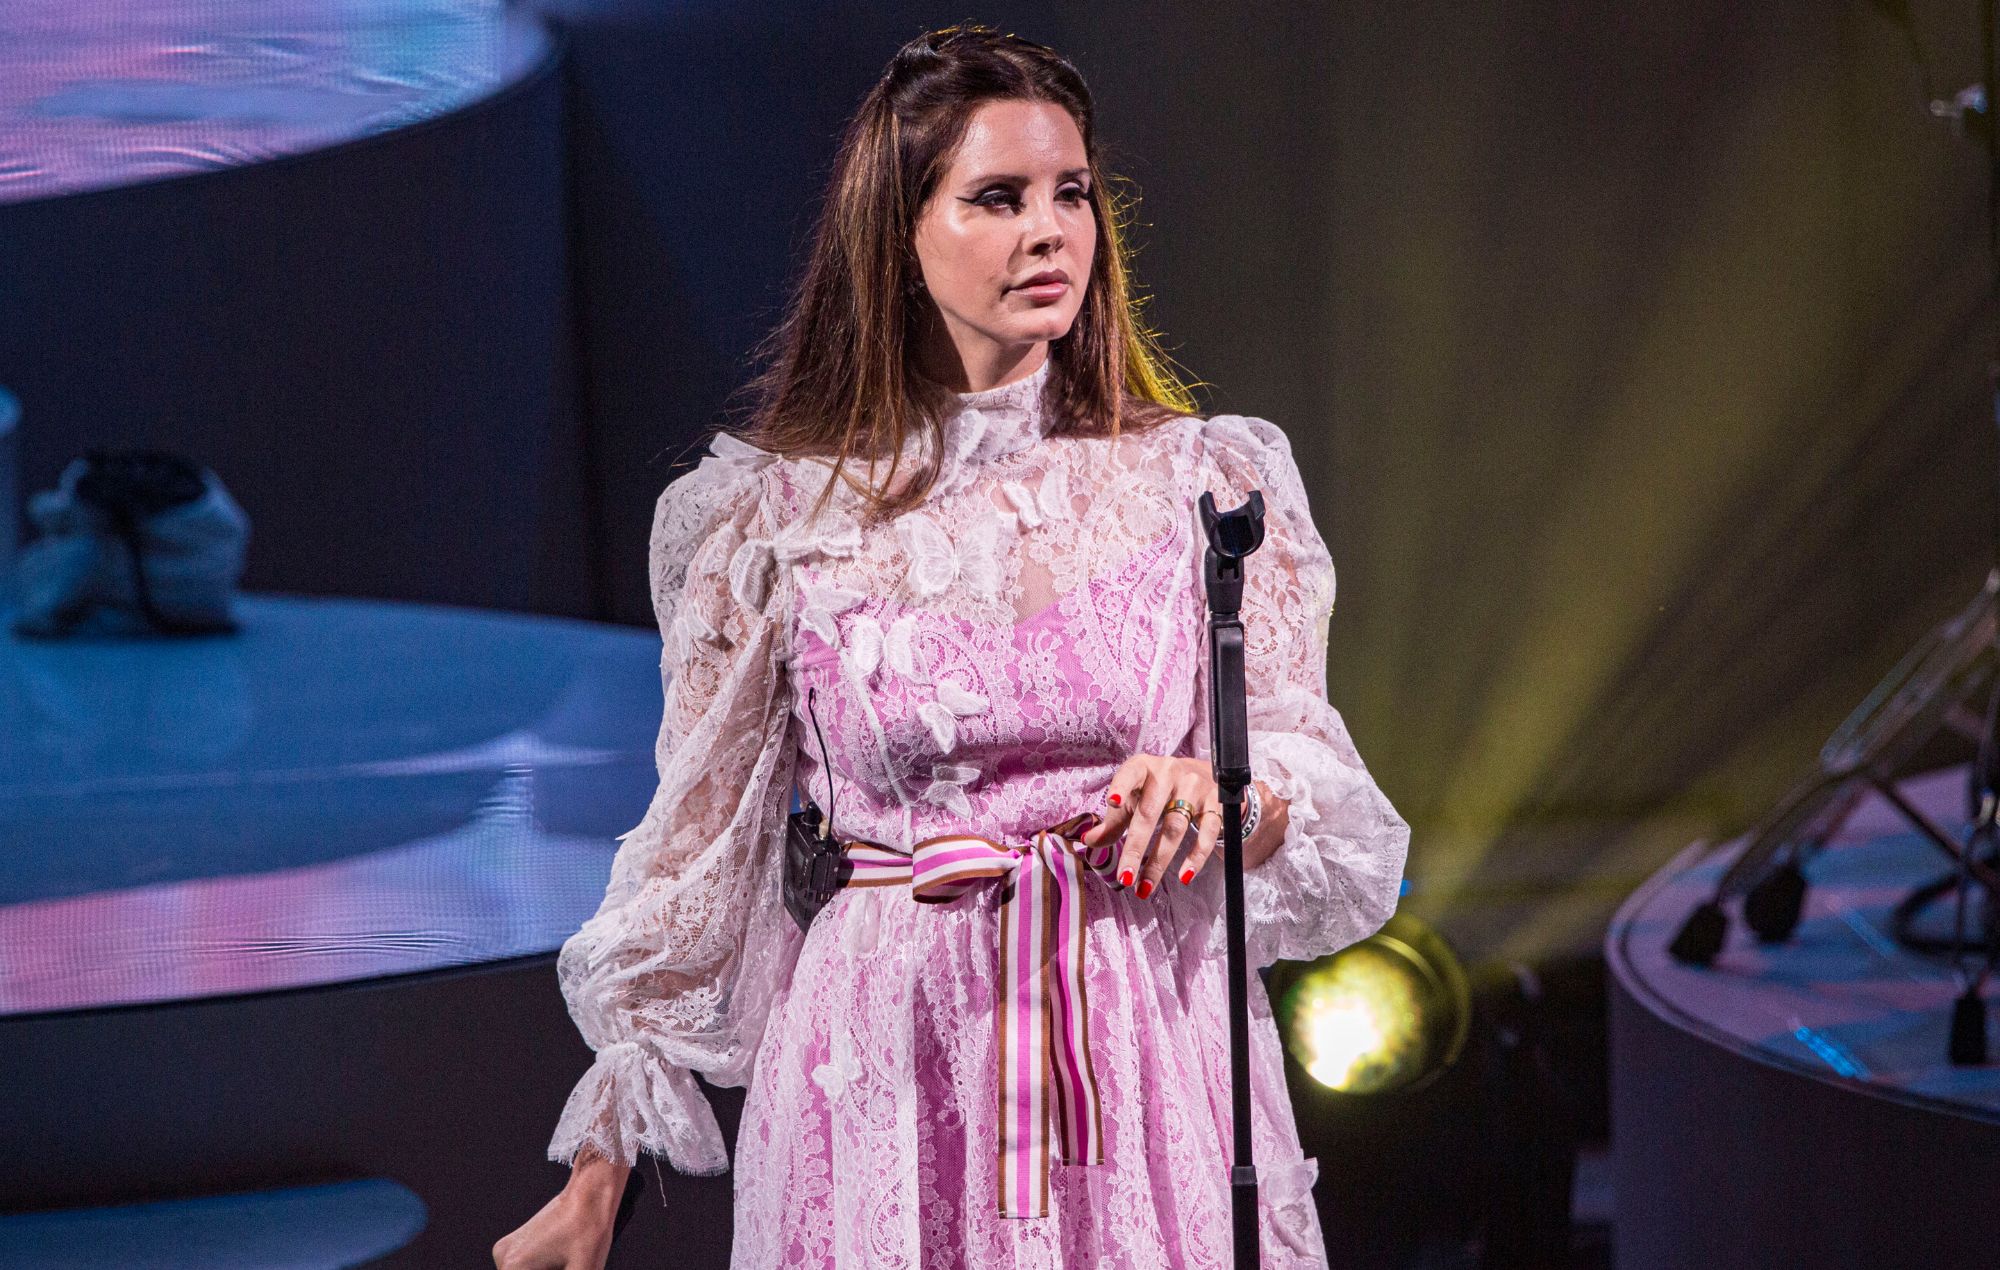 Lana Del Rey performing live onstage